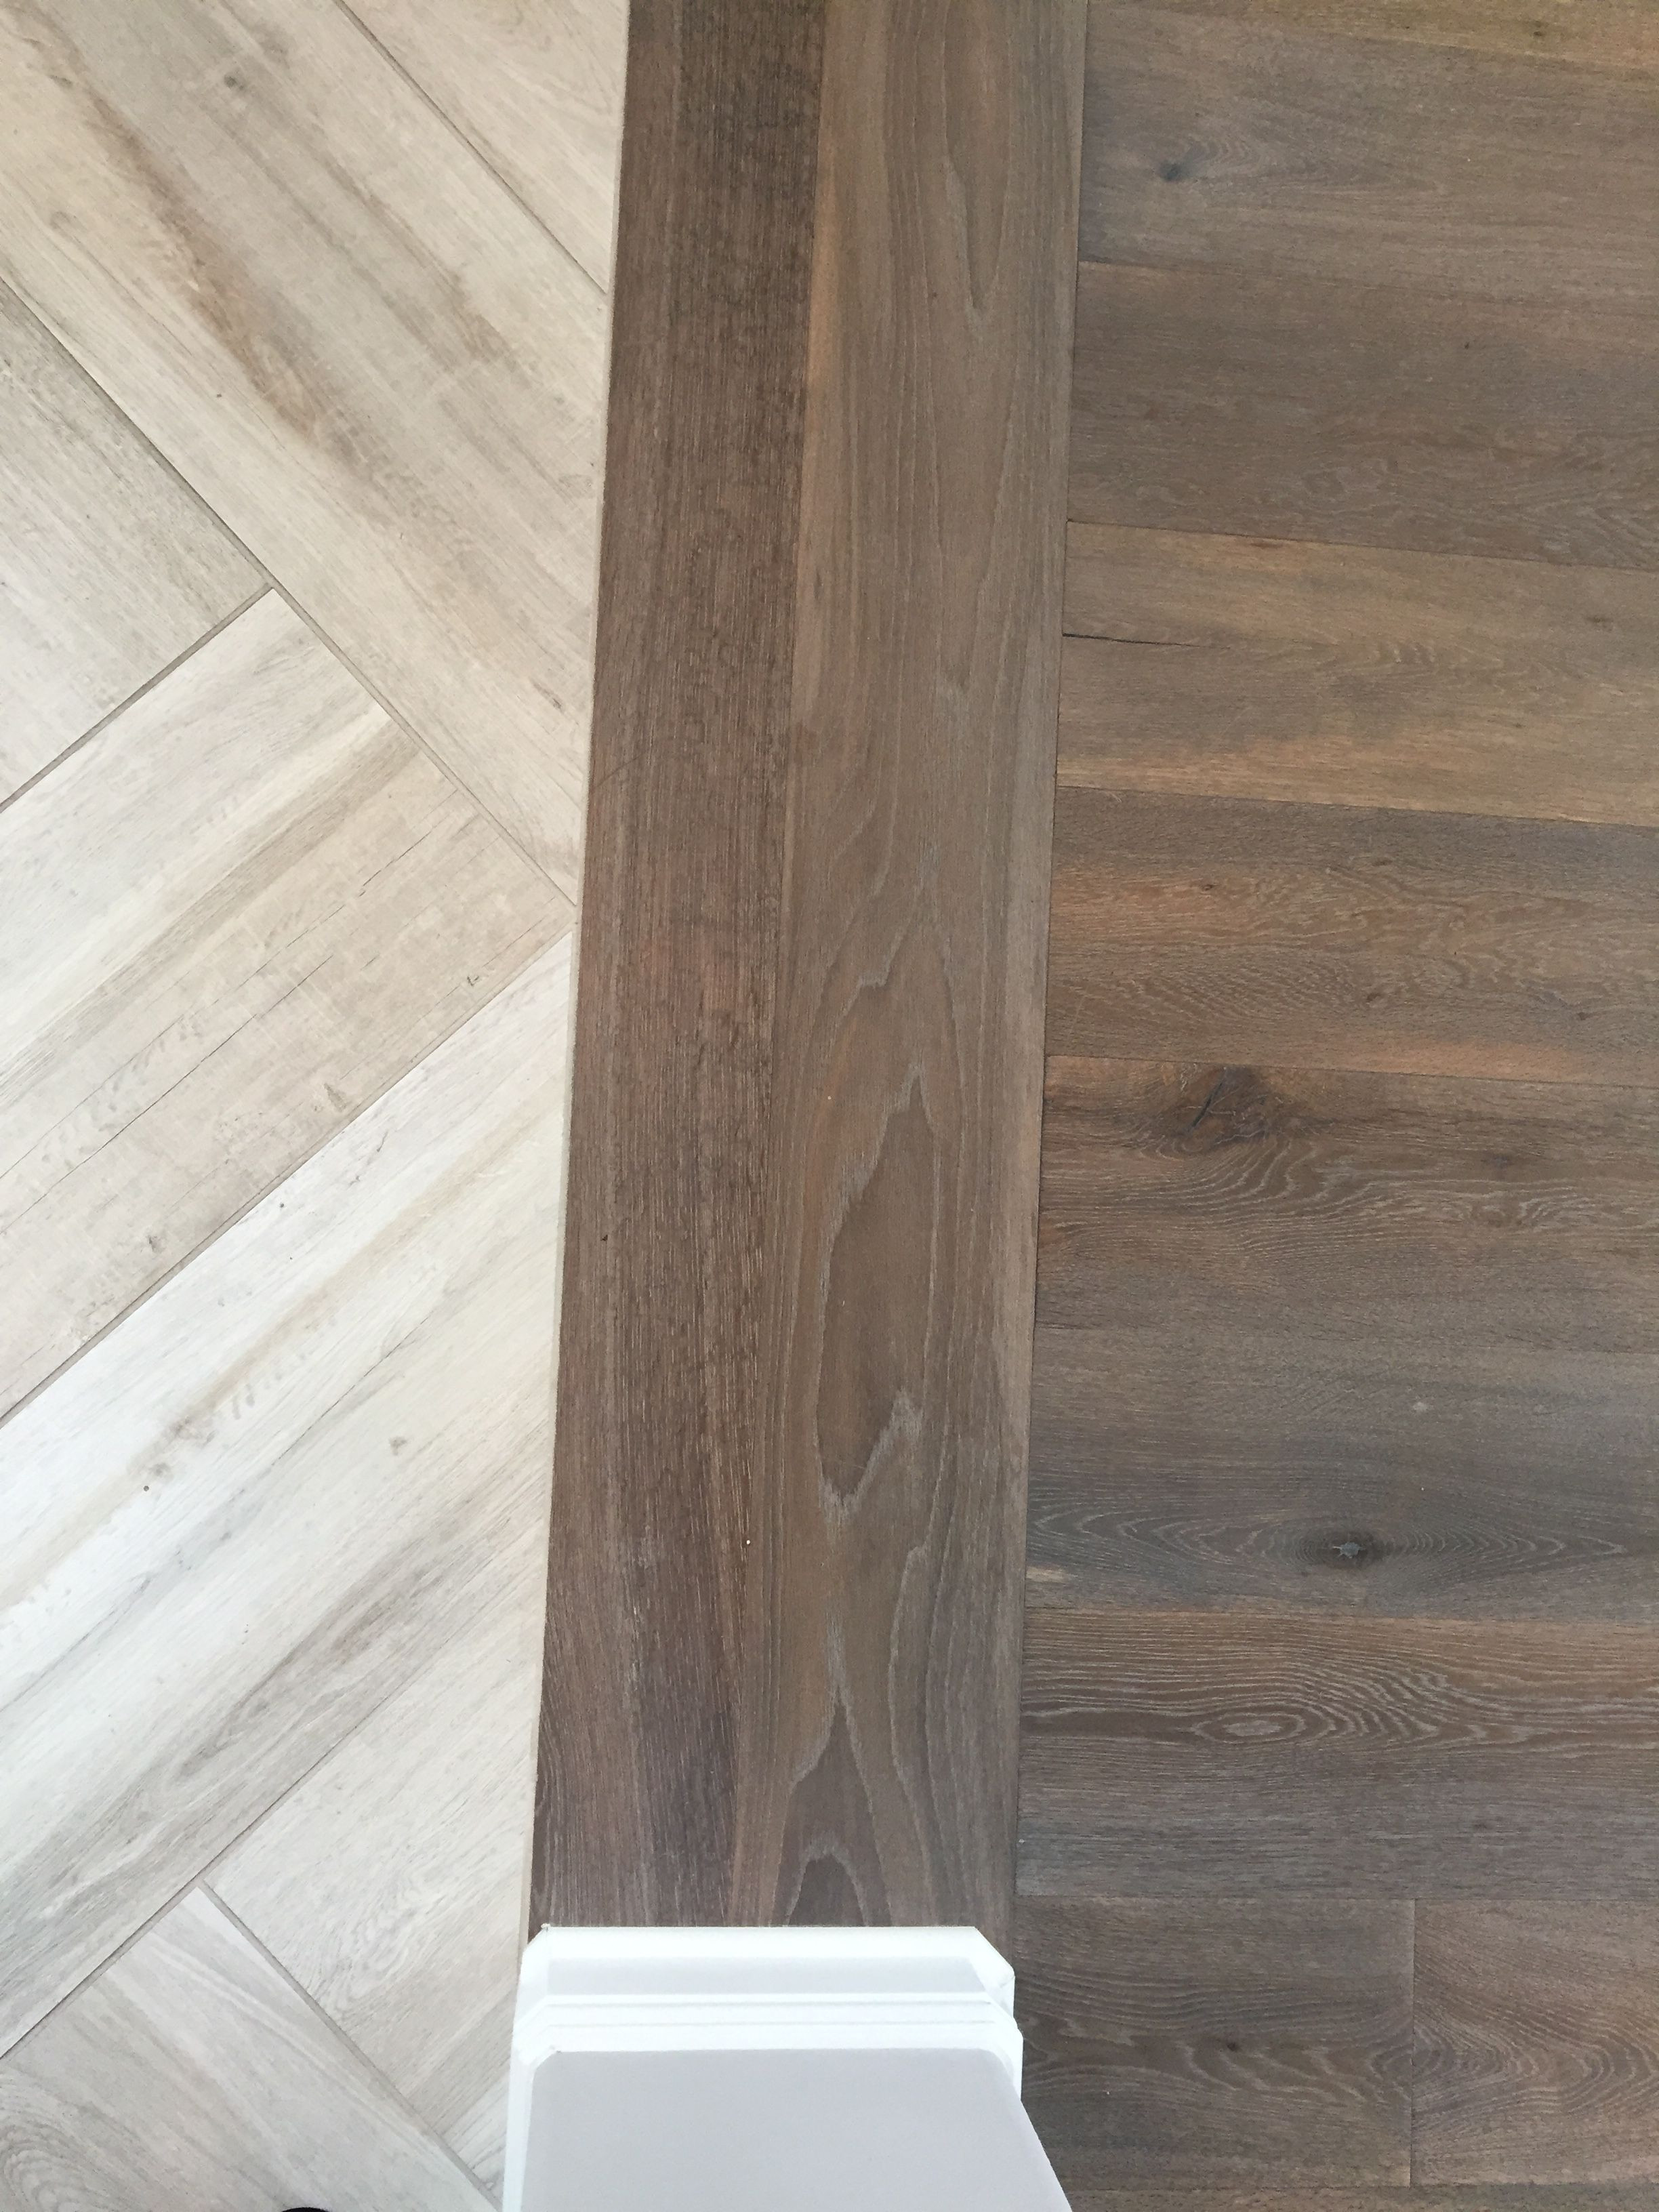 28 Wonderful Hardwood Floor Stains 2017 2024 free download hardwood floor stains 2017 of floor transition laminate to herringbone tile pattern model in floor transition laminate to herringbone tile pattern